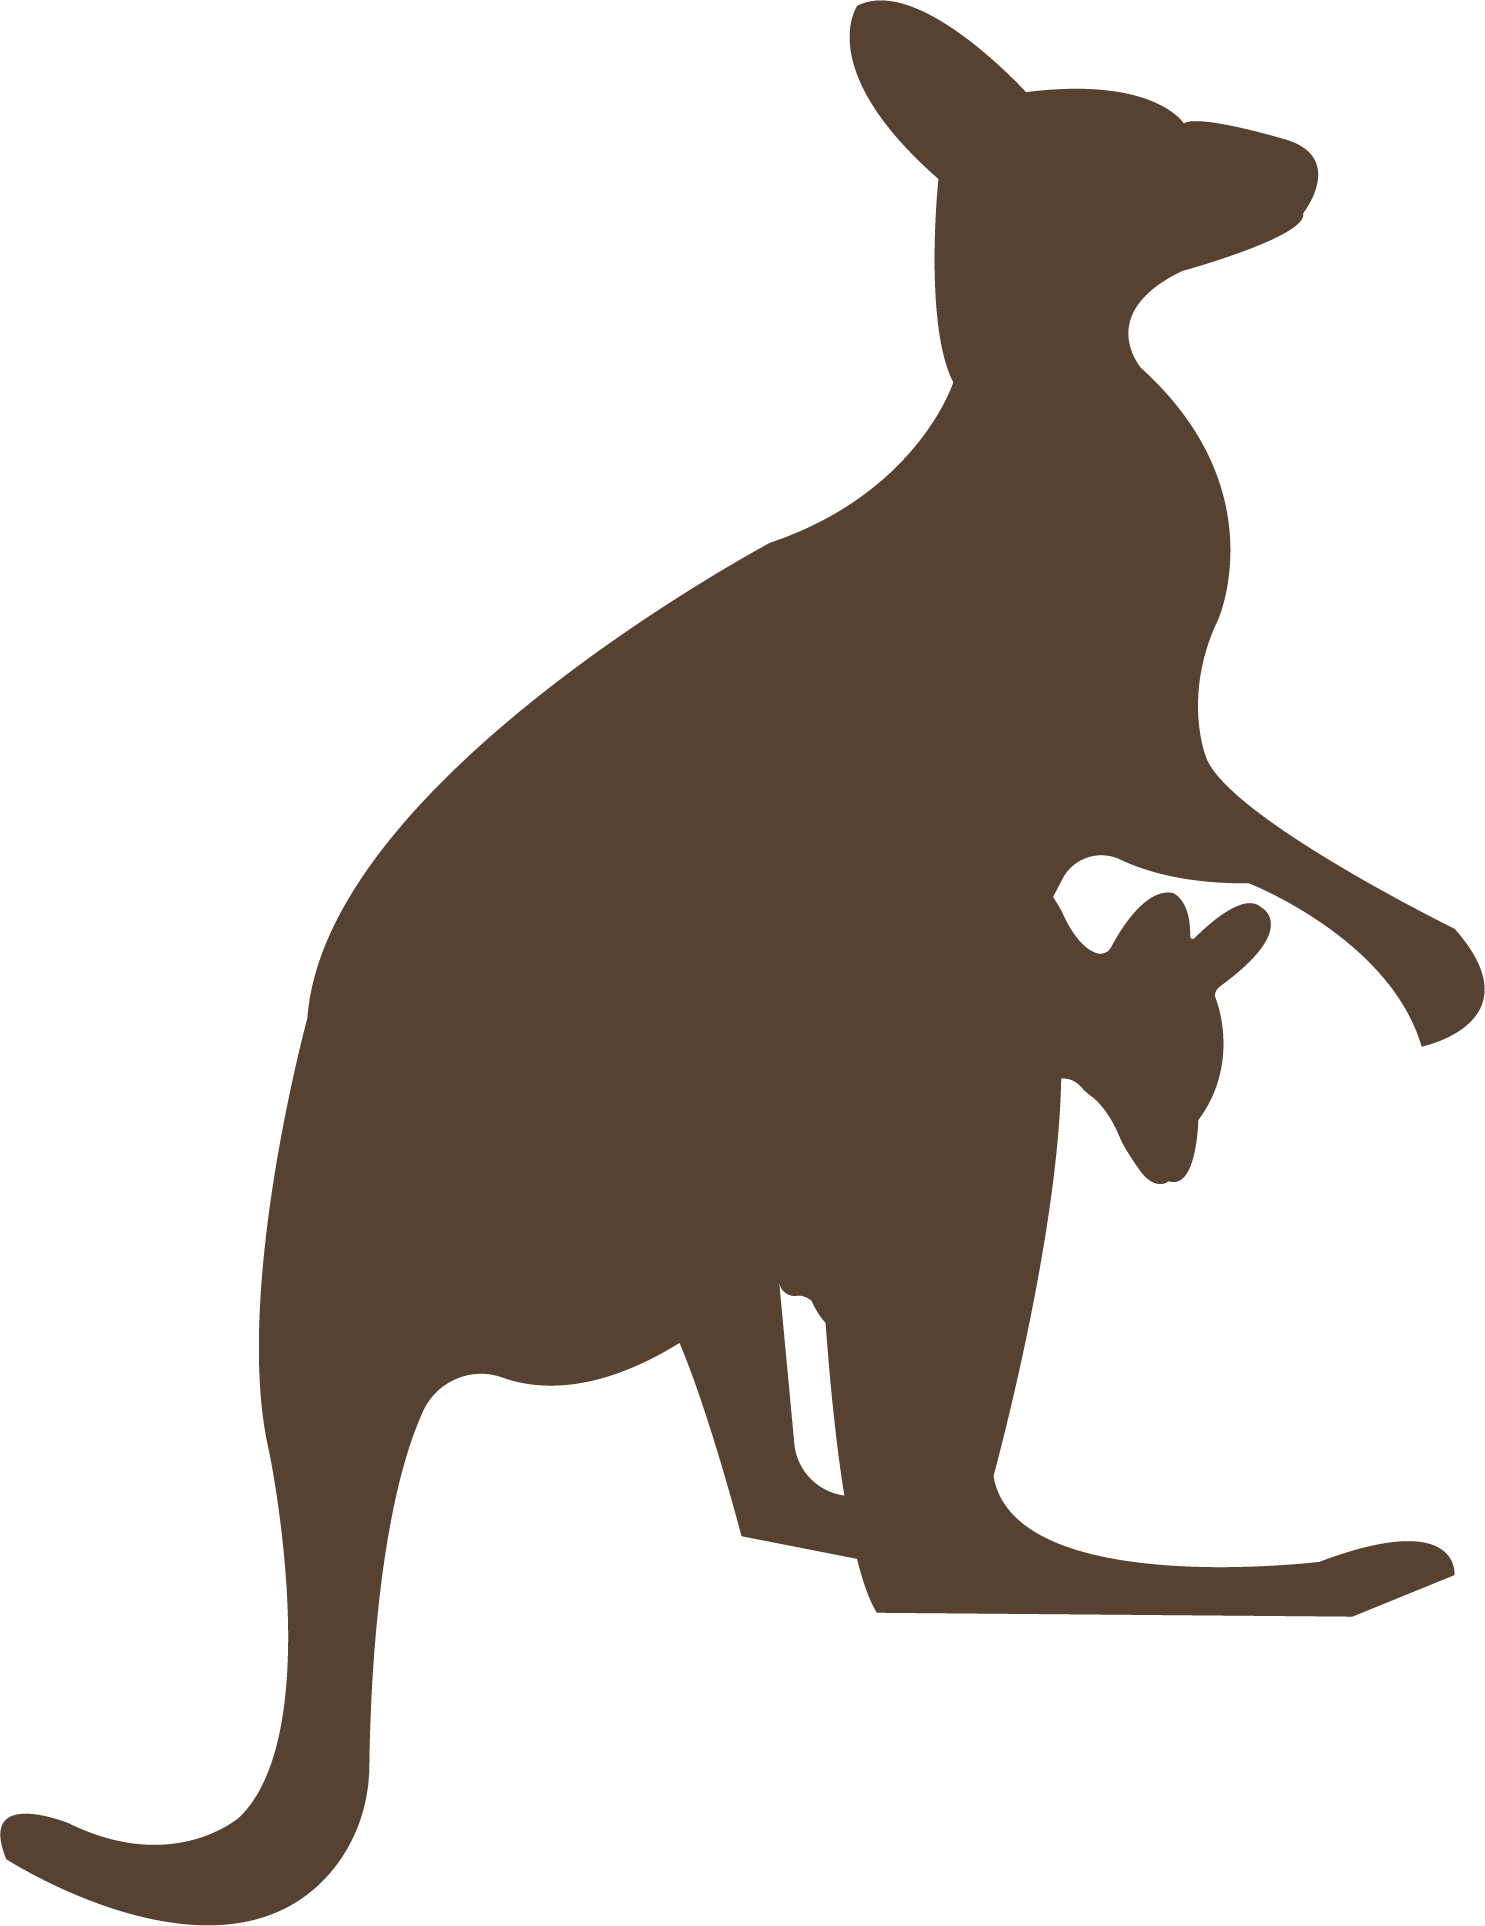 kangaroo-clipart-mask-kangaroo-mask-transparent-free-for-download-on